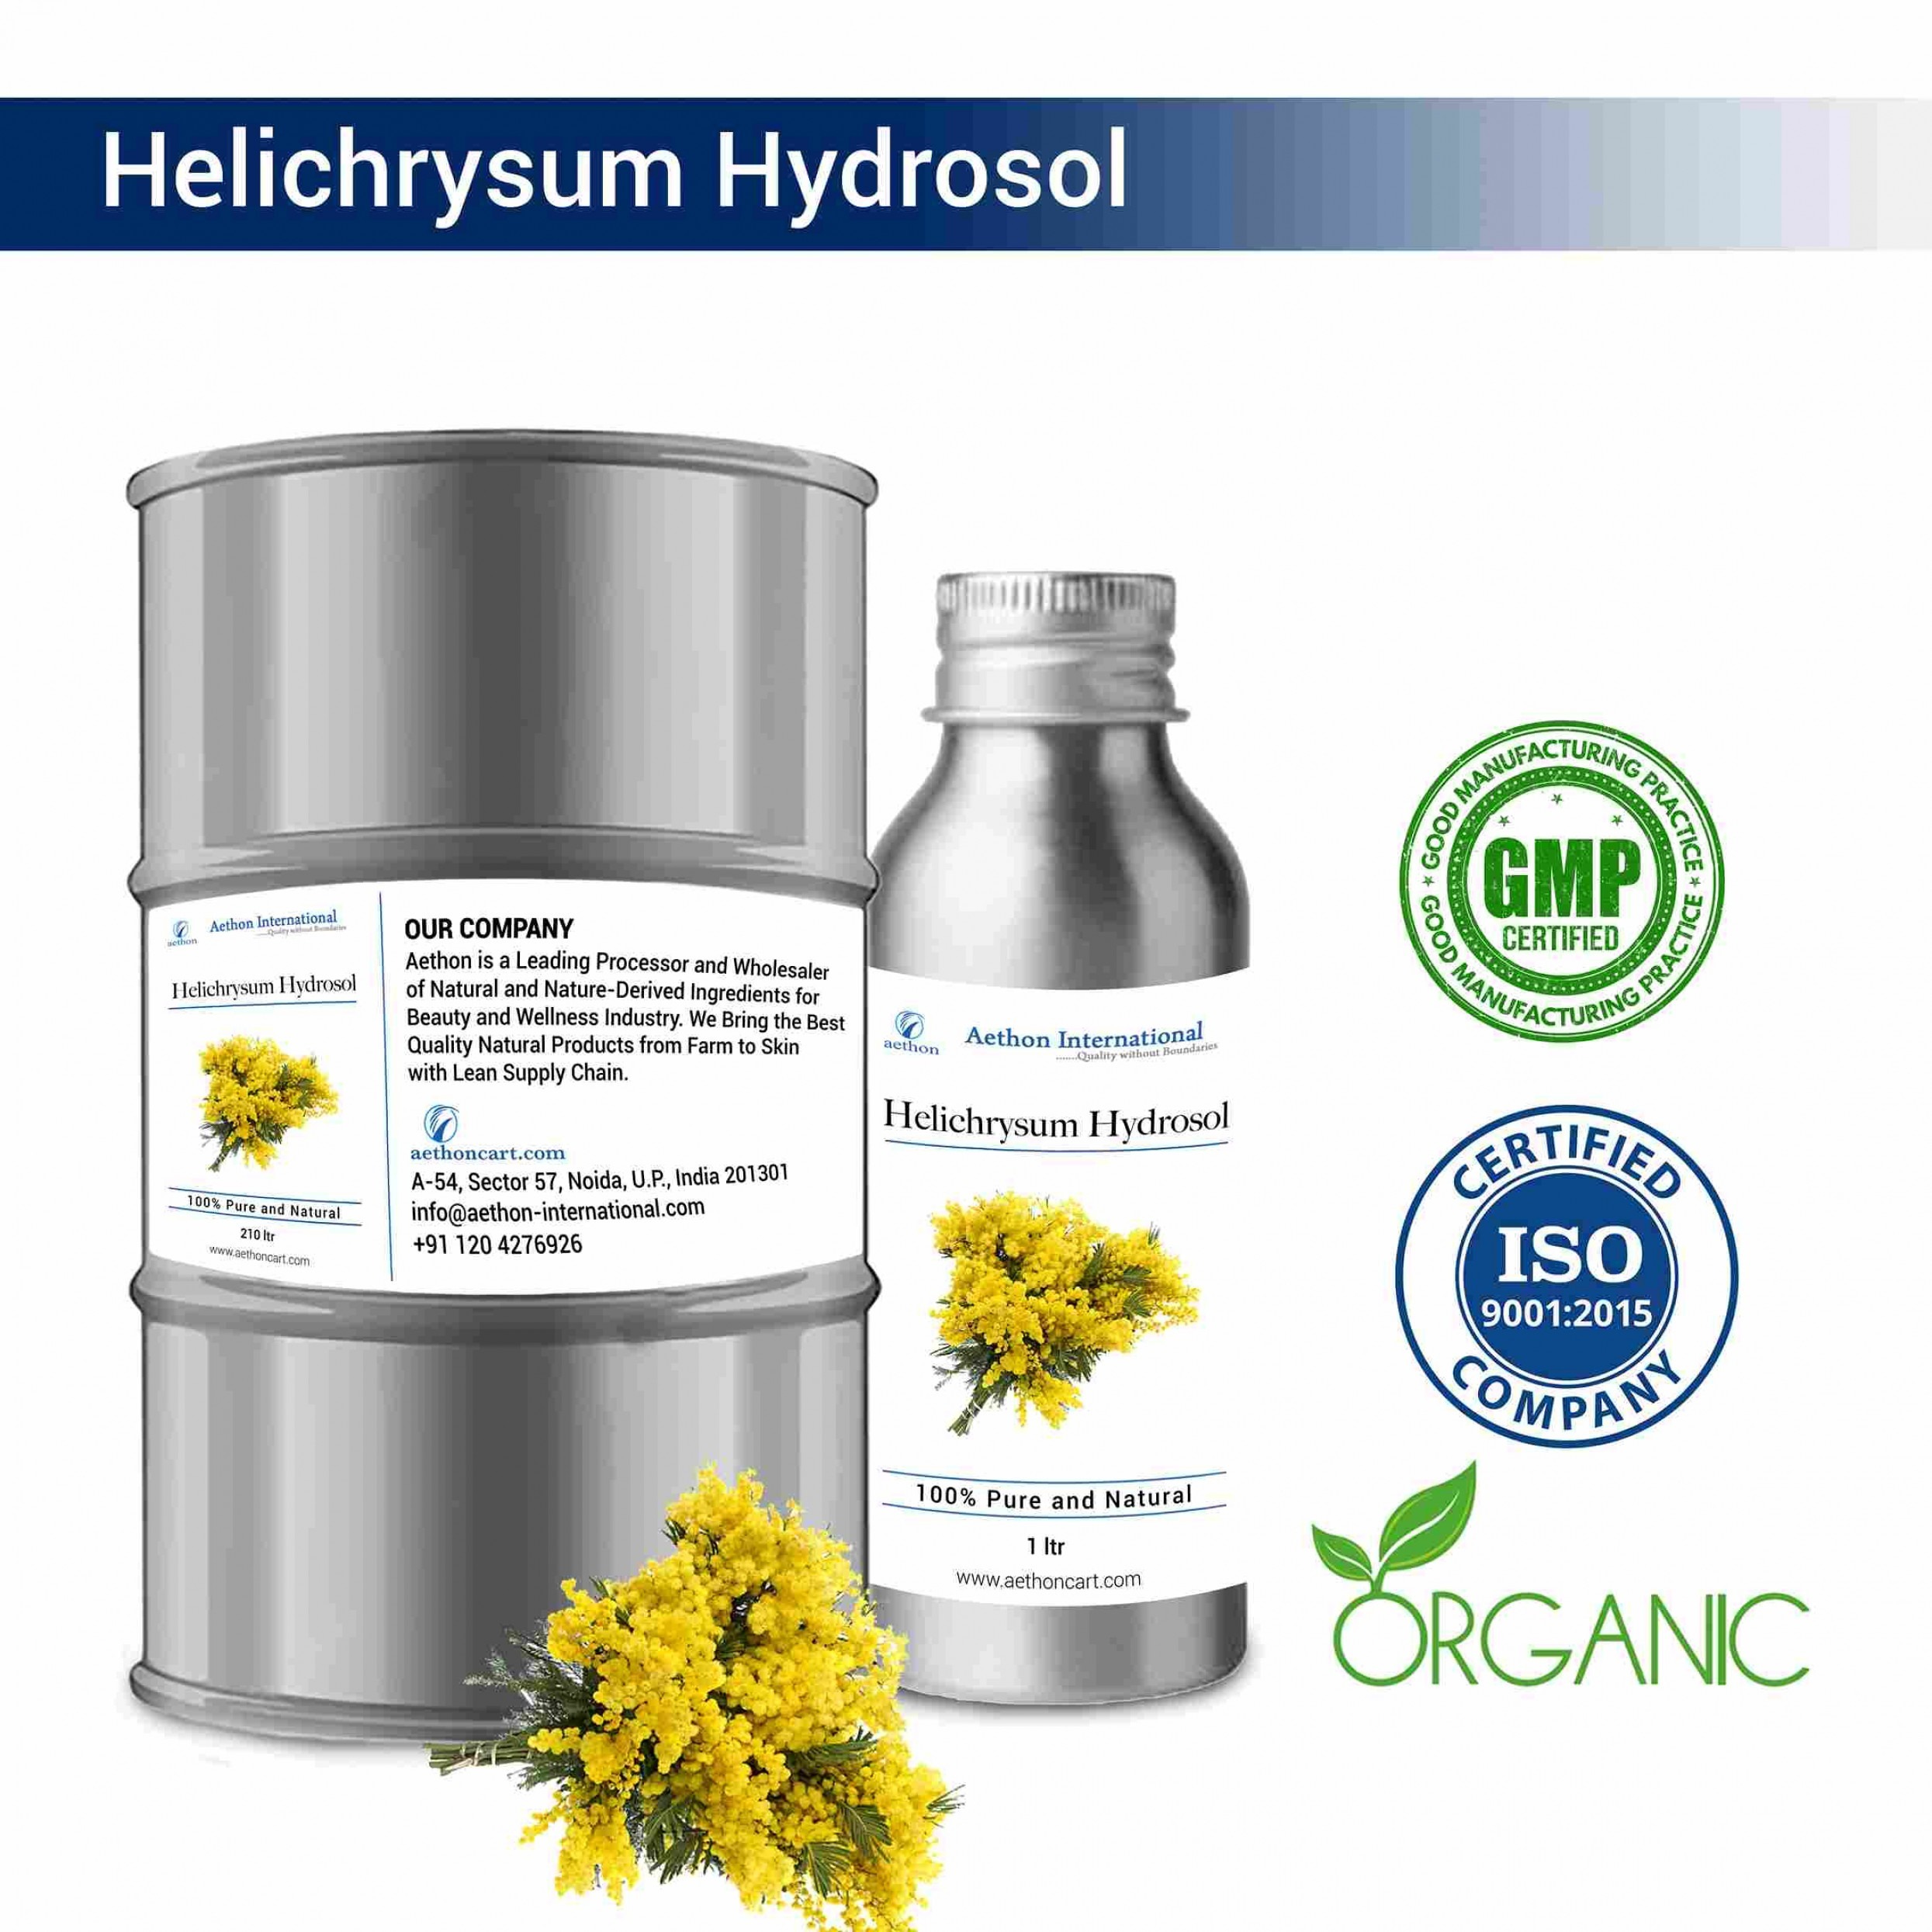 Helichrysum Hydrosol